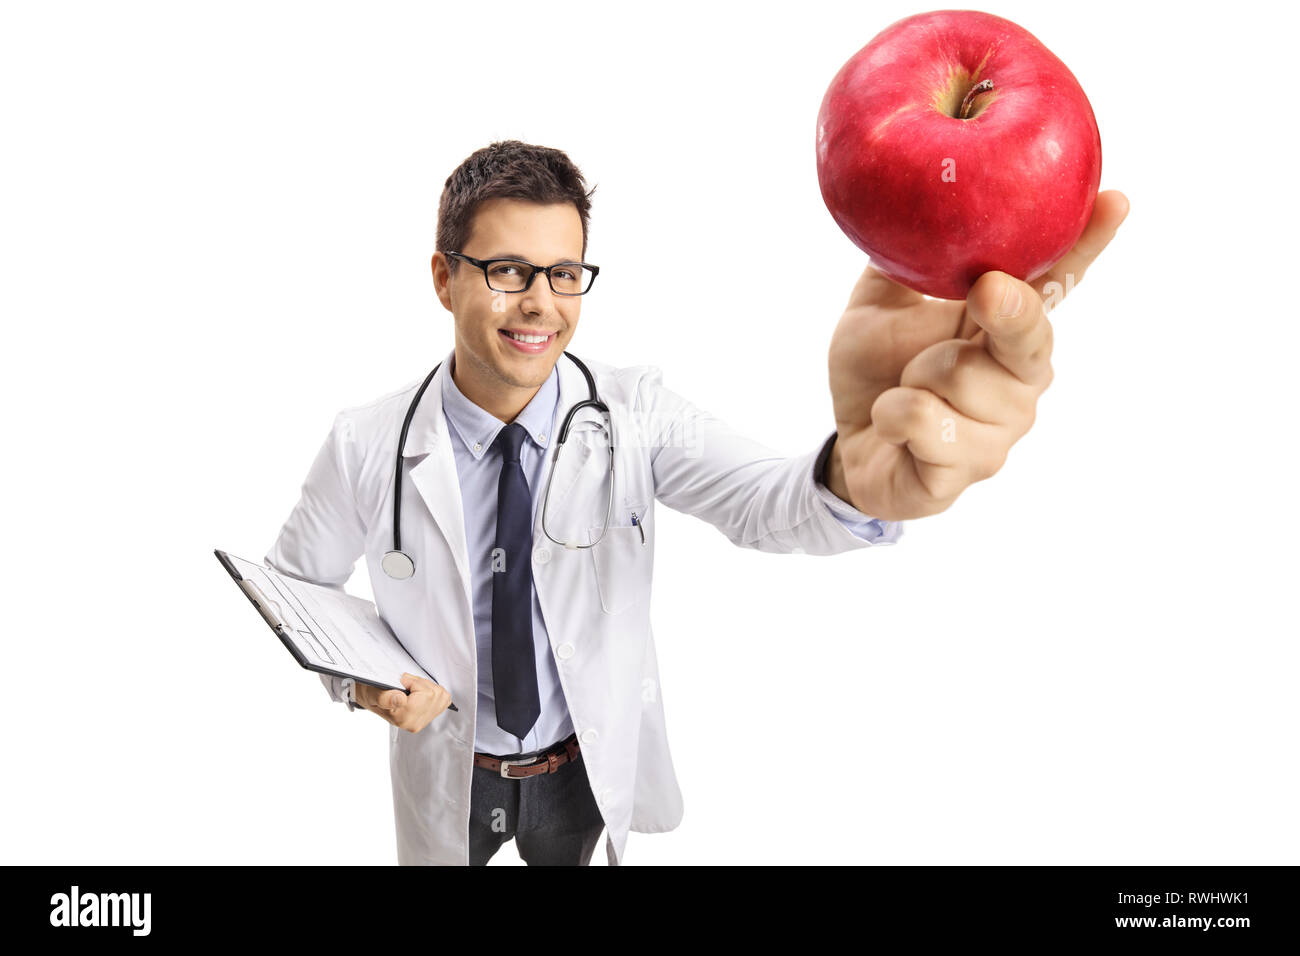 Lächelnden jungen männlichen Arzt Holding einen roten Apfel vor der Kamera auf weißem Hintergrund Stockfoto